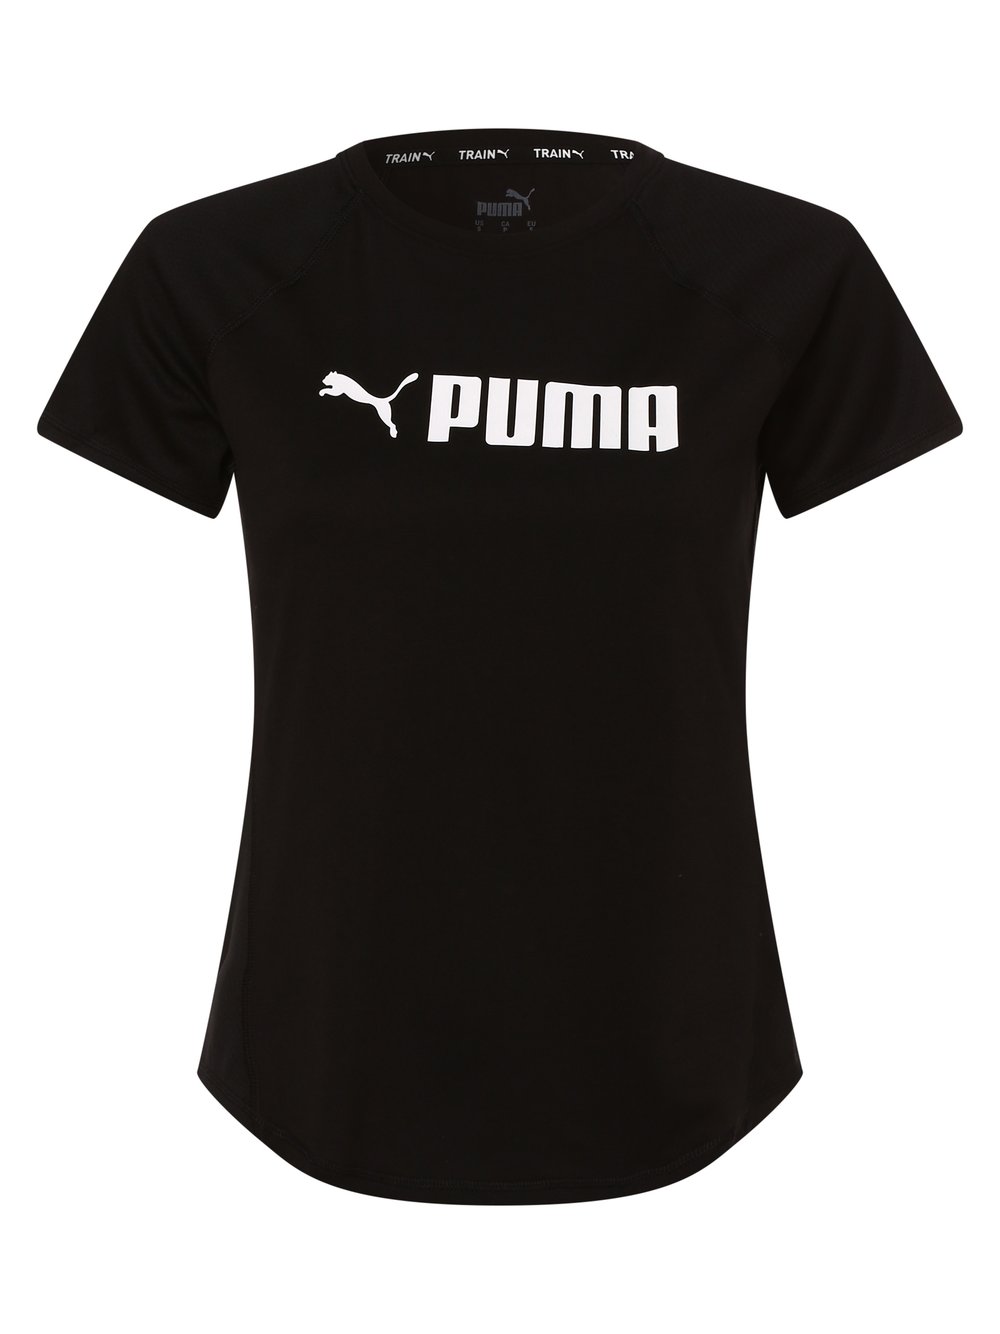 Puma - T-shirt damski, czarny